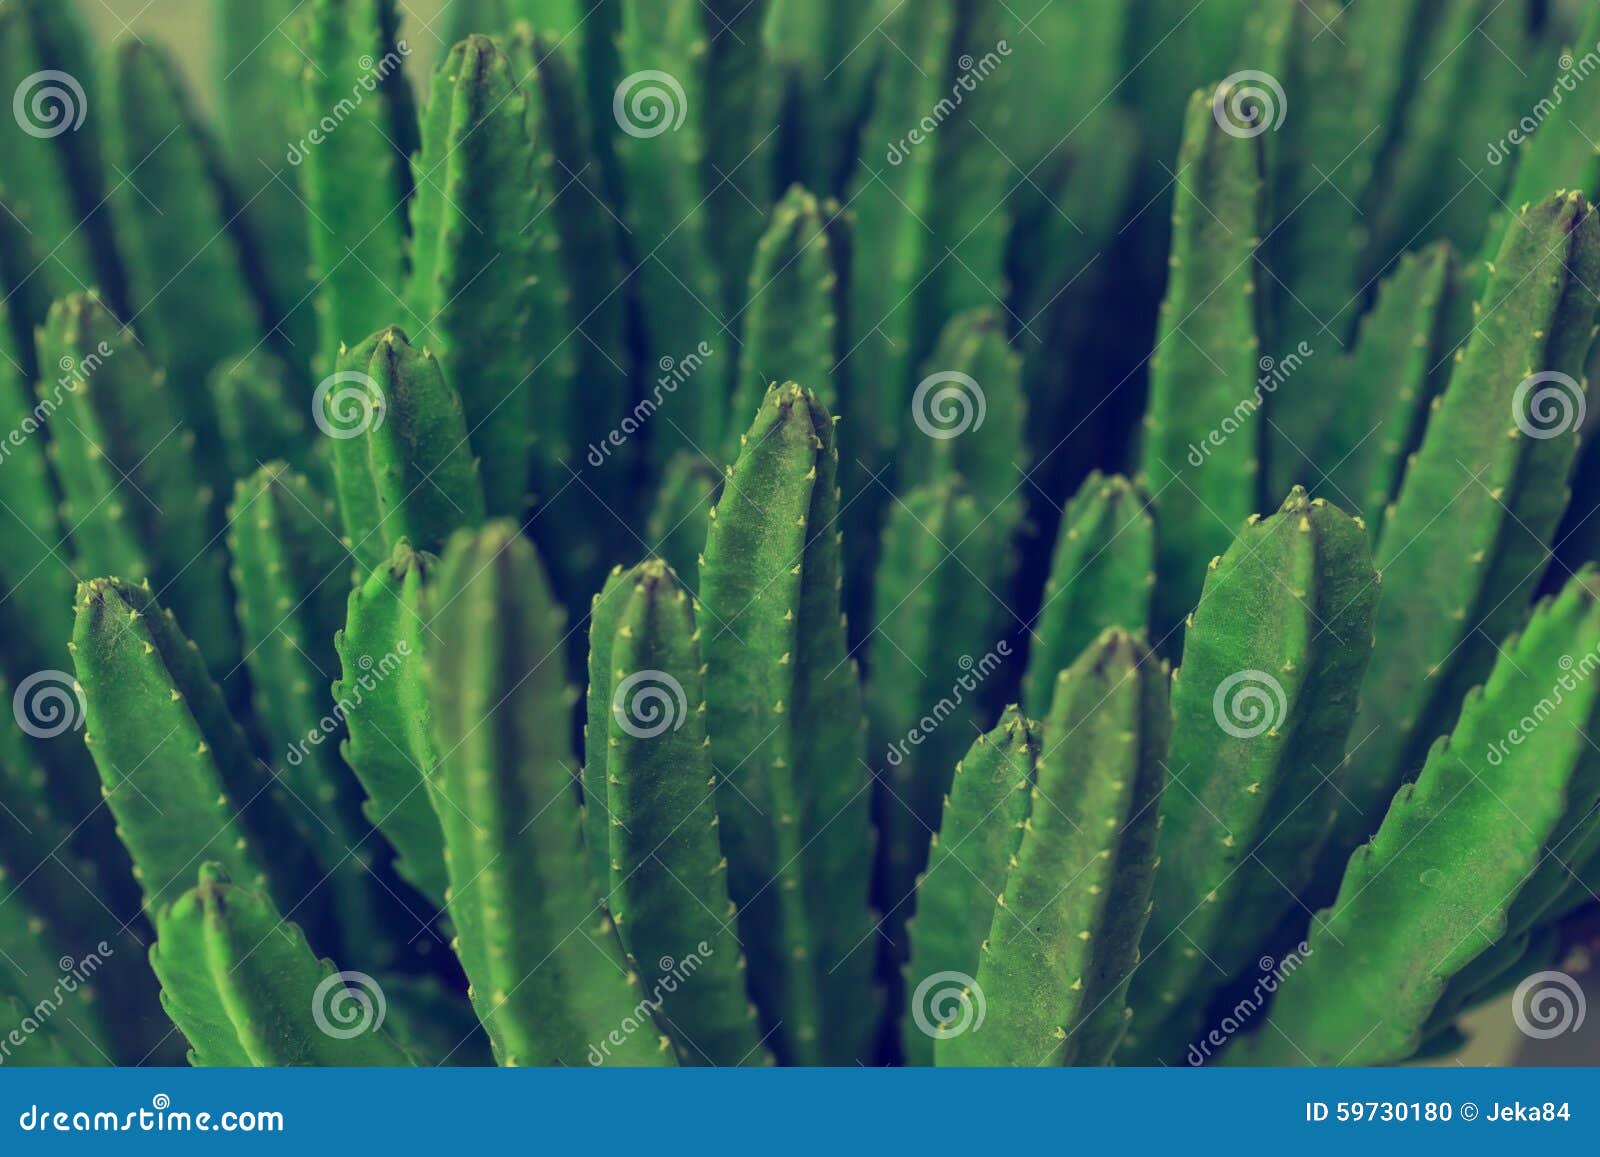 cactus specie closeup photo.